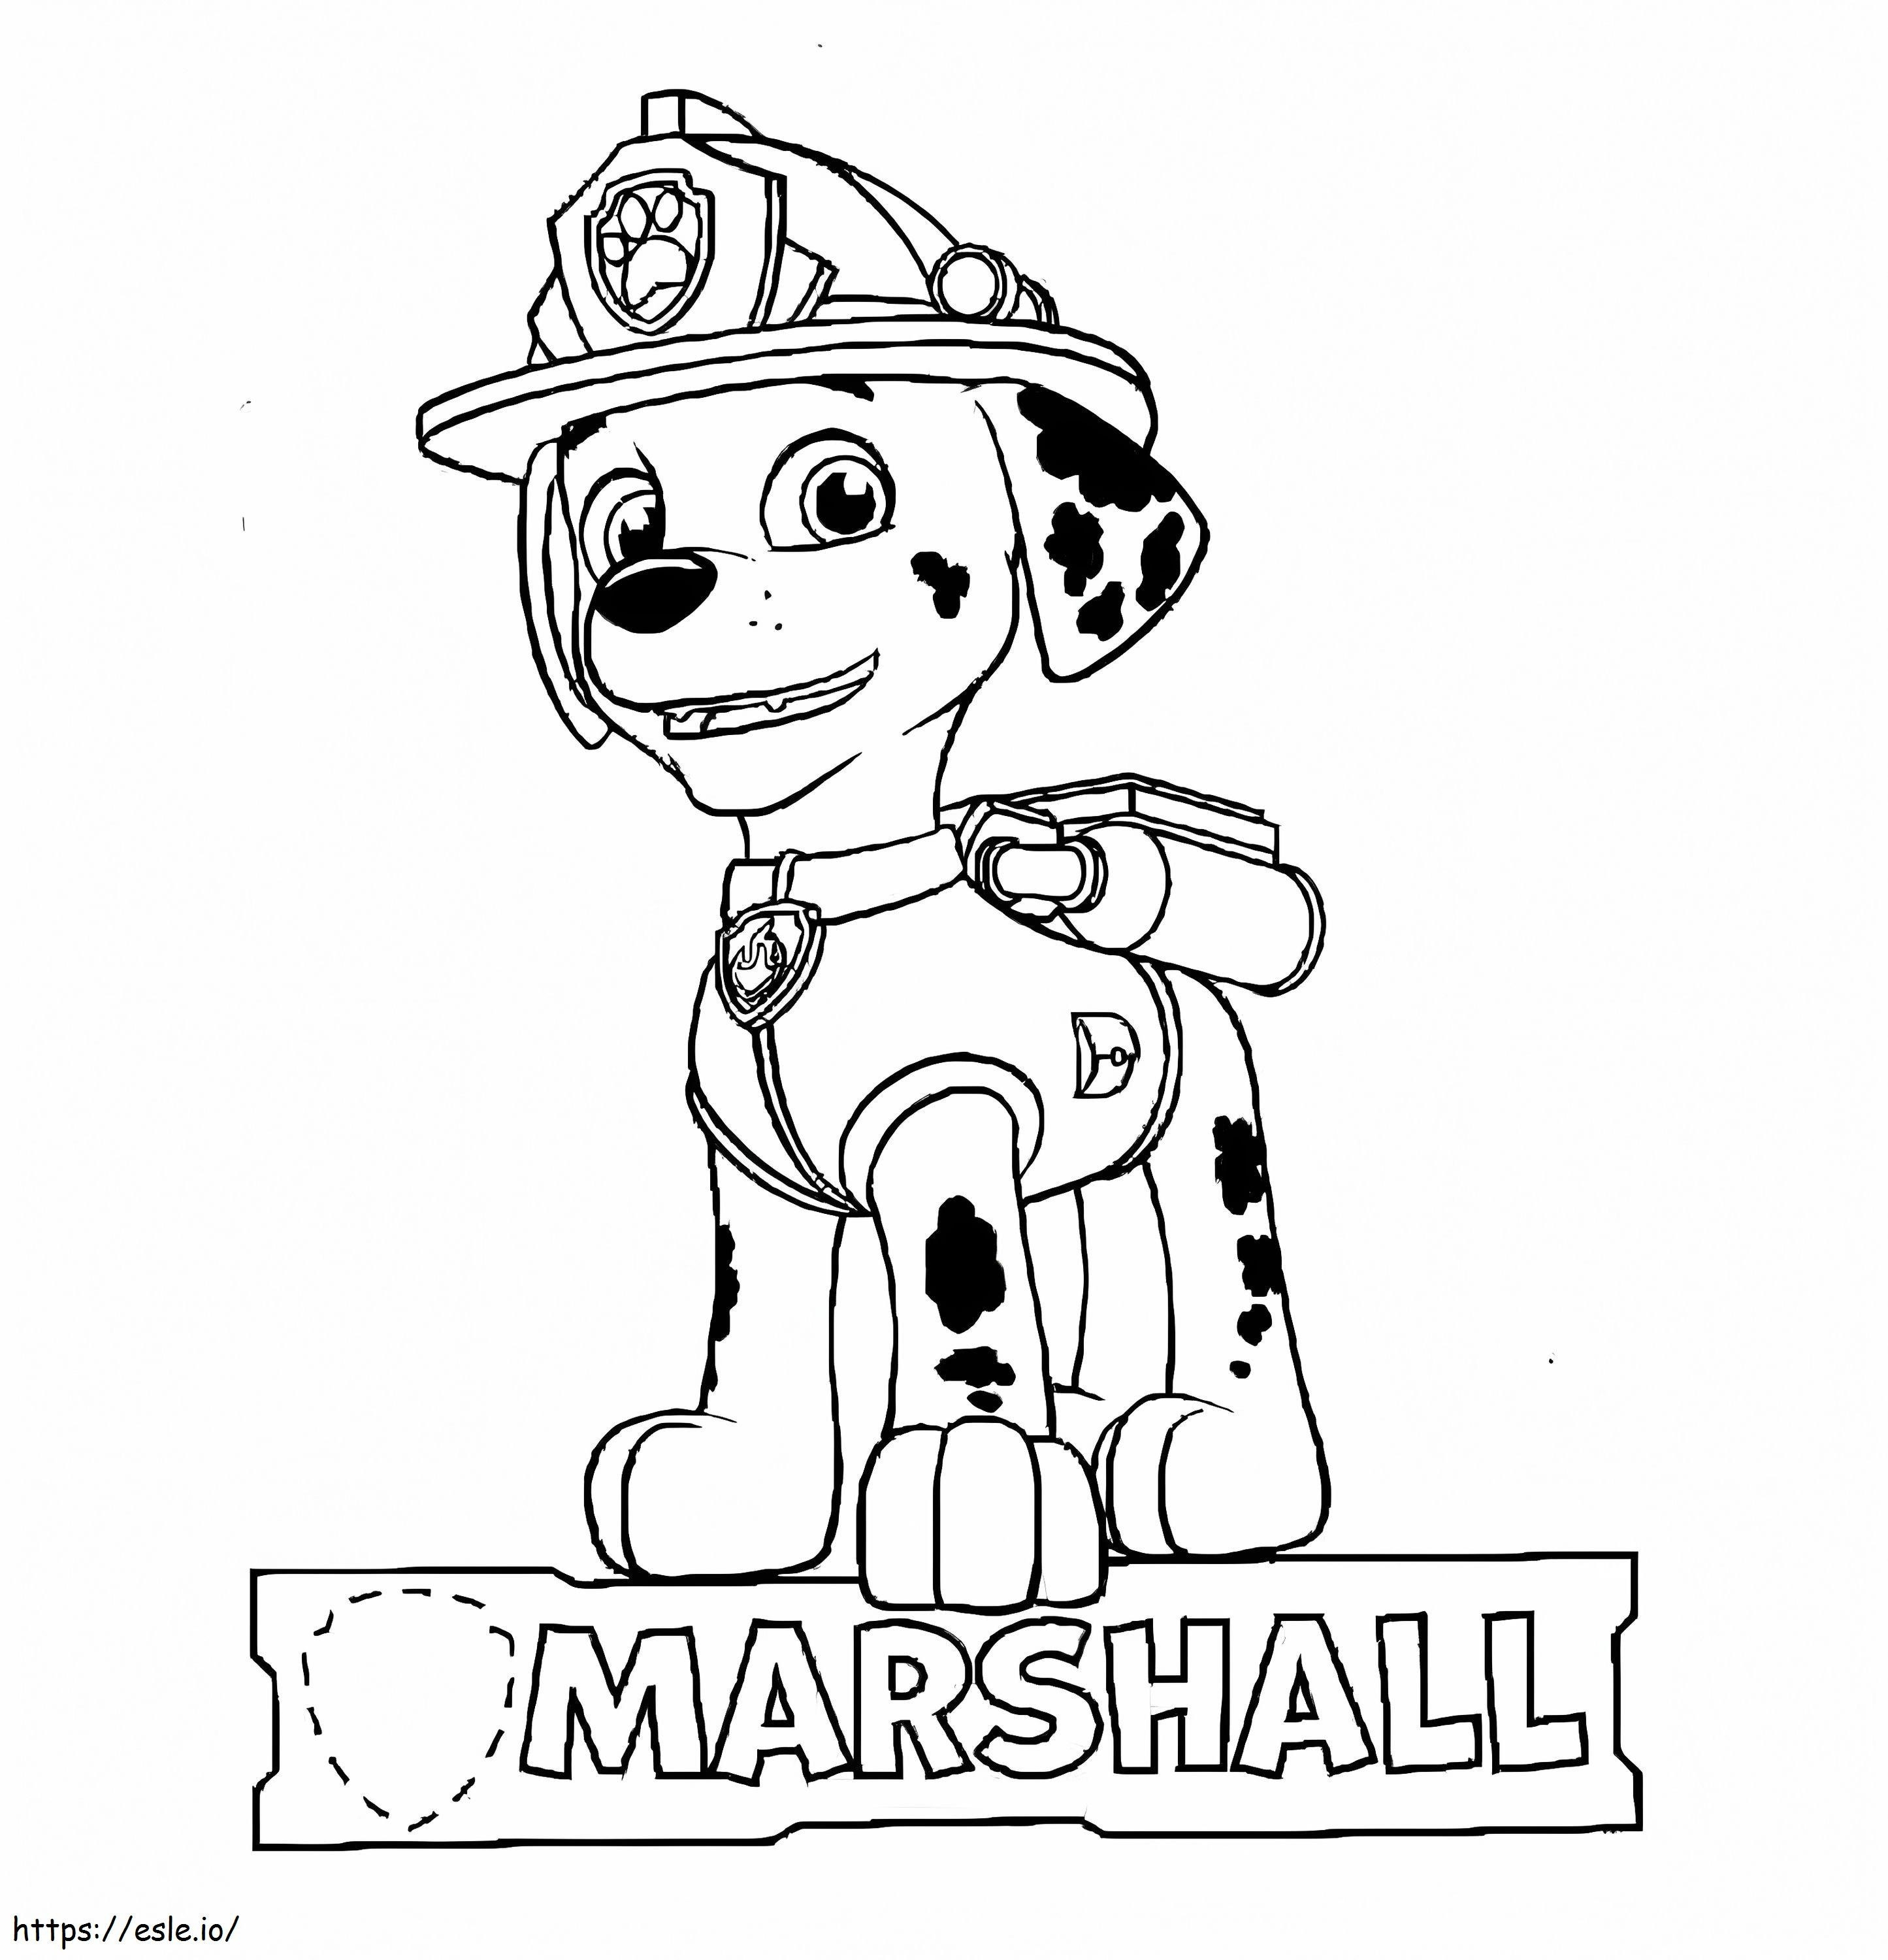 Marshall Psi Patrol kolorowanka